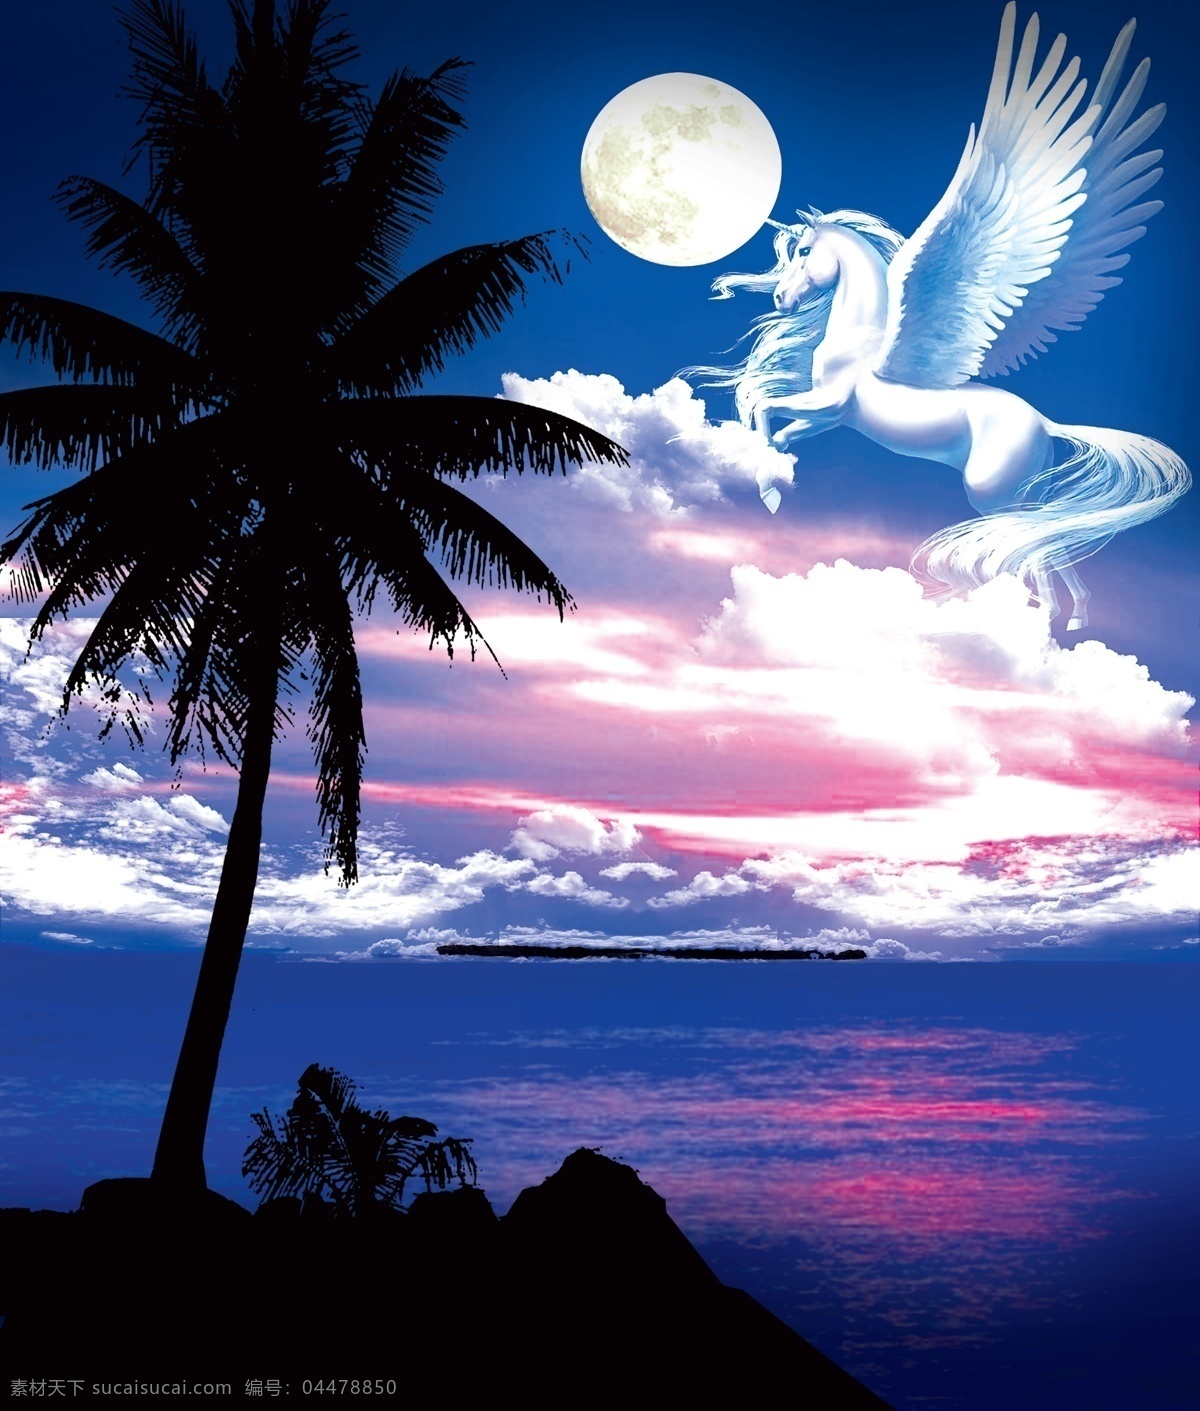 飞马 椰树影子 透明 海 天使 独角兽 晚霞 椰树 影子 分层素材 蓝色 紫色霞光 自然景观